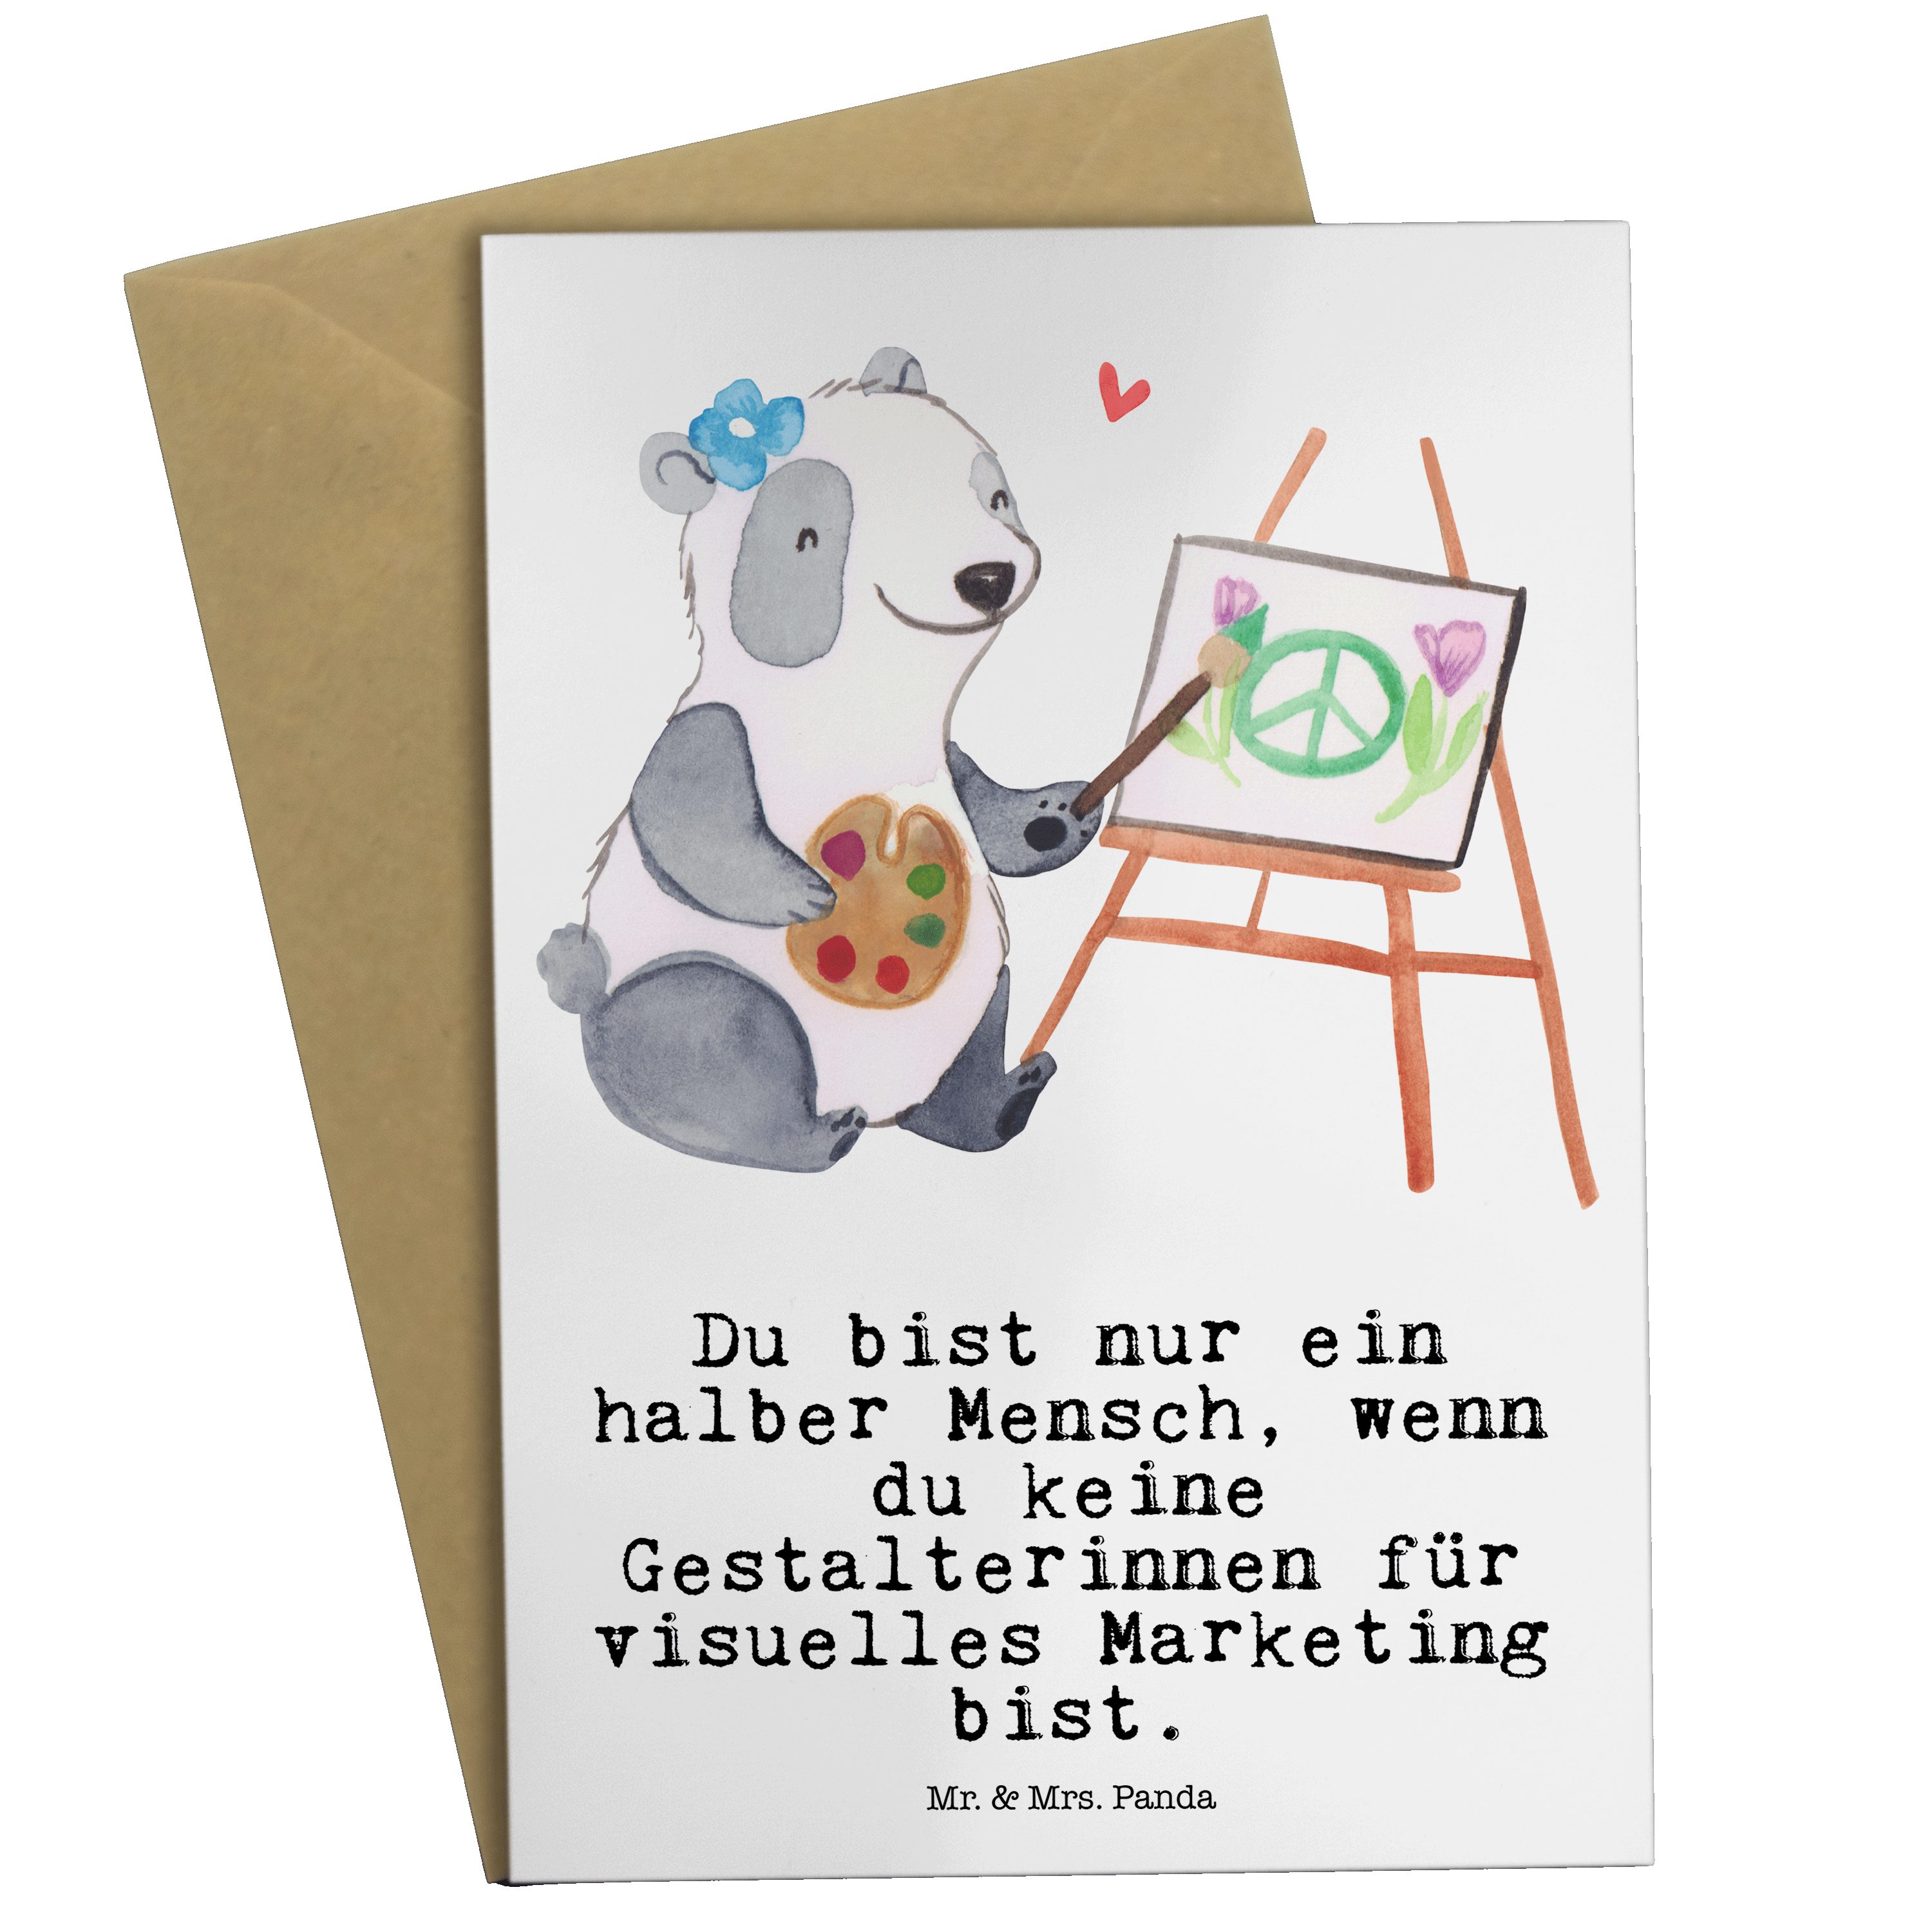 Mr. & Mrs. Panda Grußkarte Gestalterinnen für visuelles Marketing mit Herz - Weiß - Geschenk, Ge